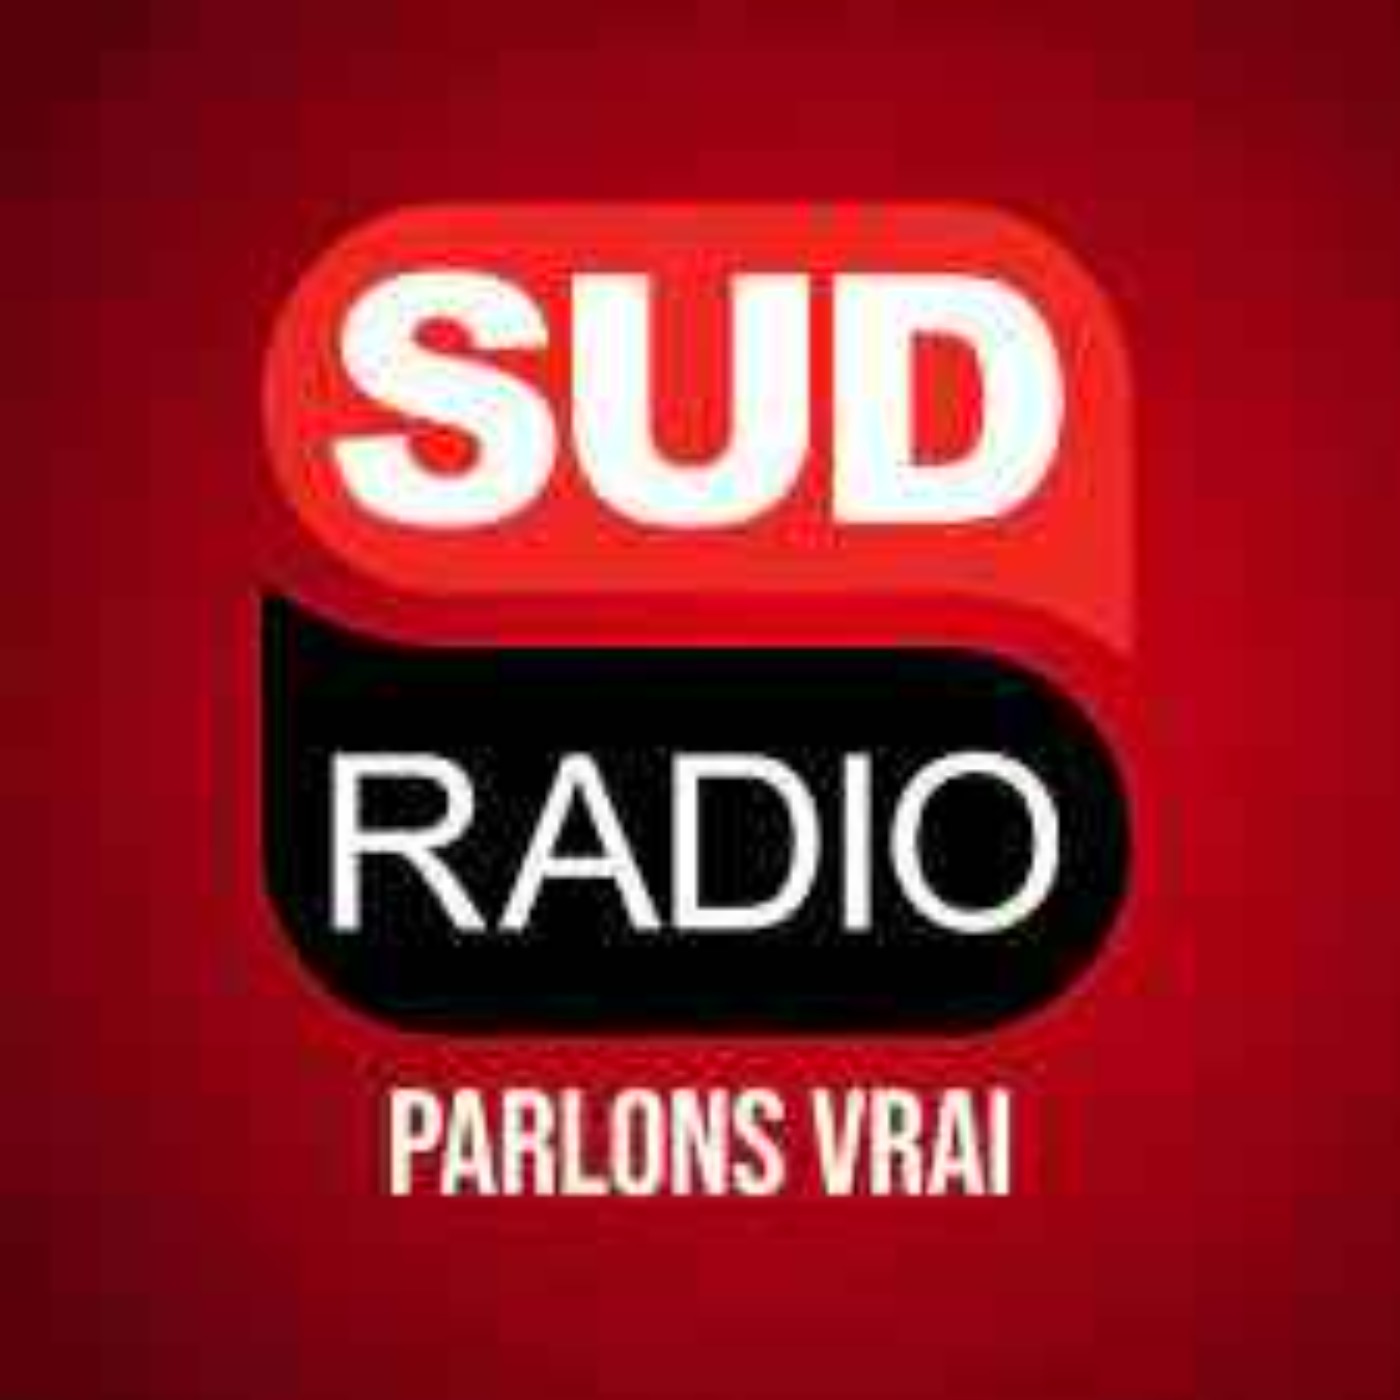 Sud Radio - France : quel soutien pour l’Ukraine ?